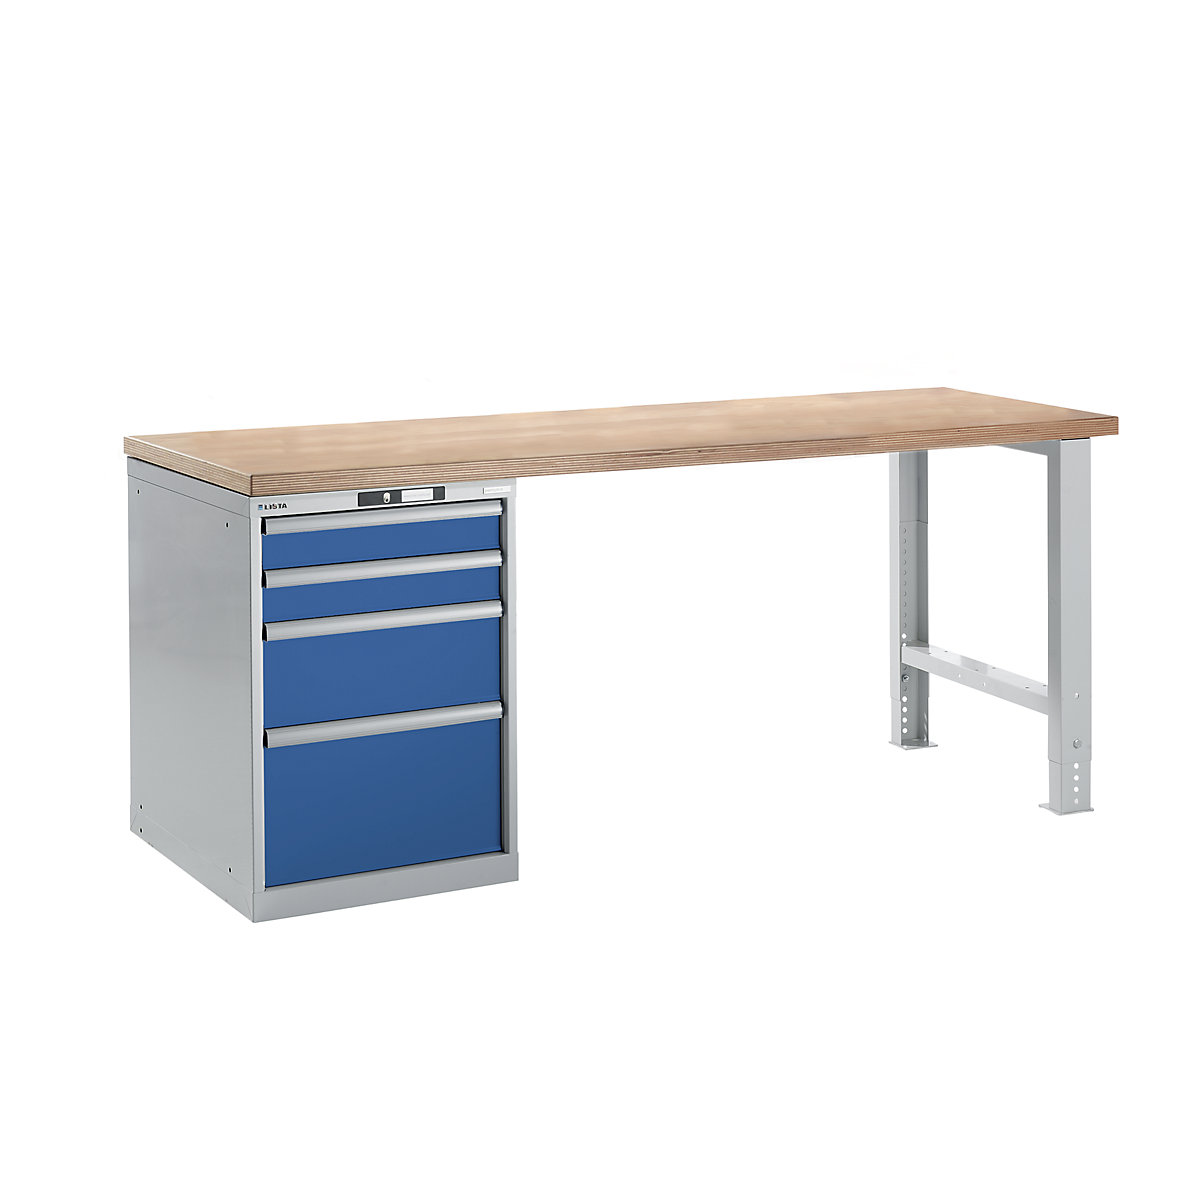 Dílenský stůl ve stavebnicovém systému – LISTA, výška 840 mm, podstavná skříňka, 4 zásuvky, hořcově modrá, šířka stolu 2000 mm-13